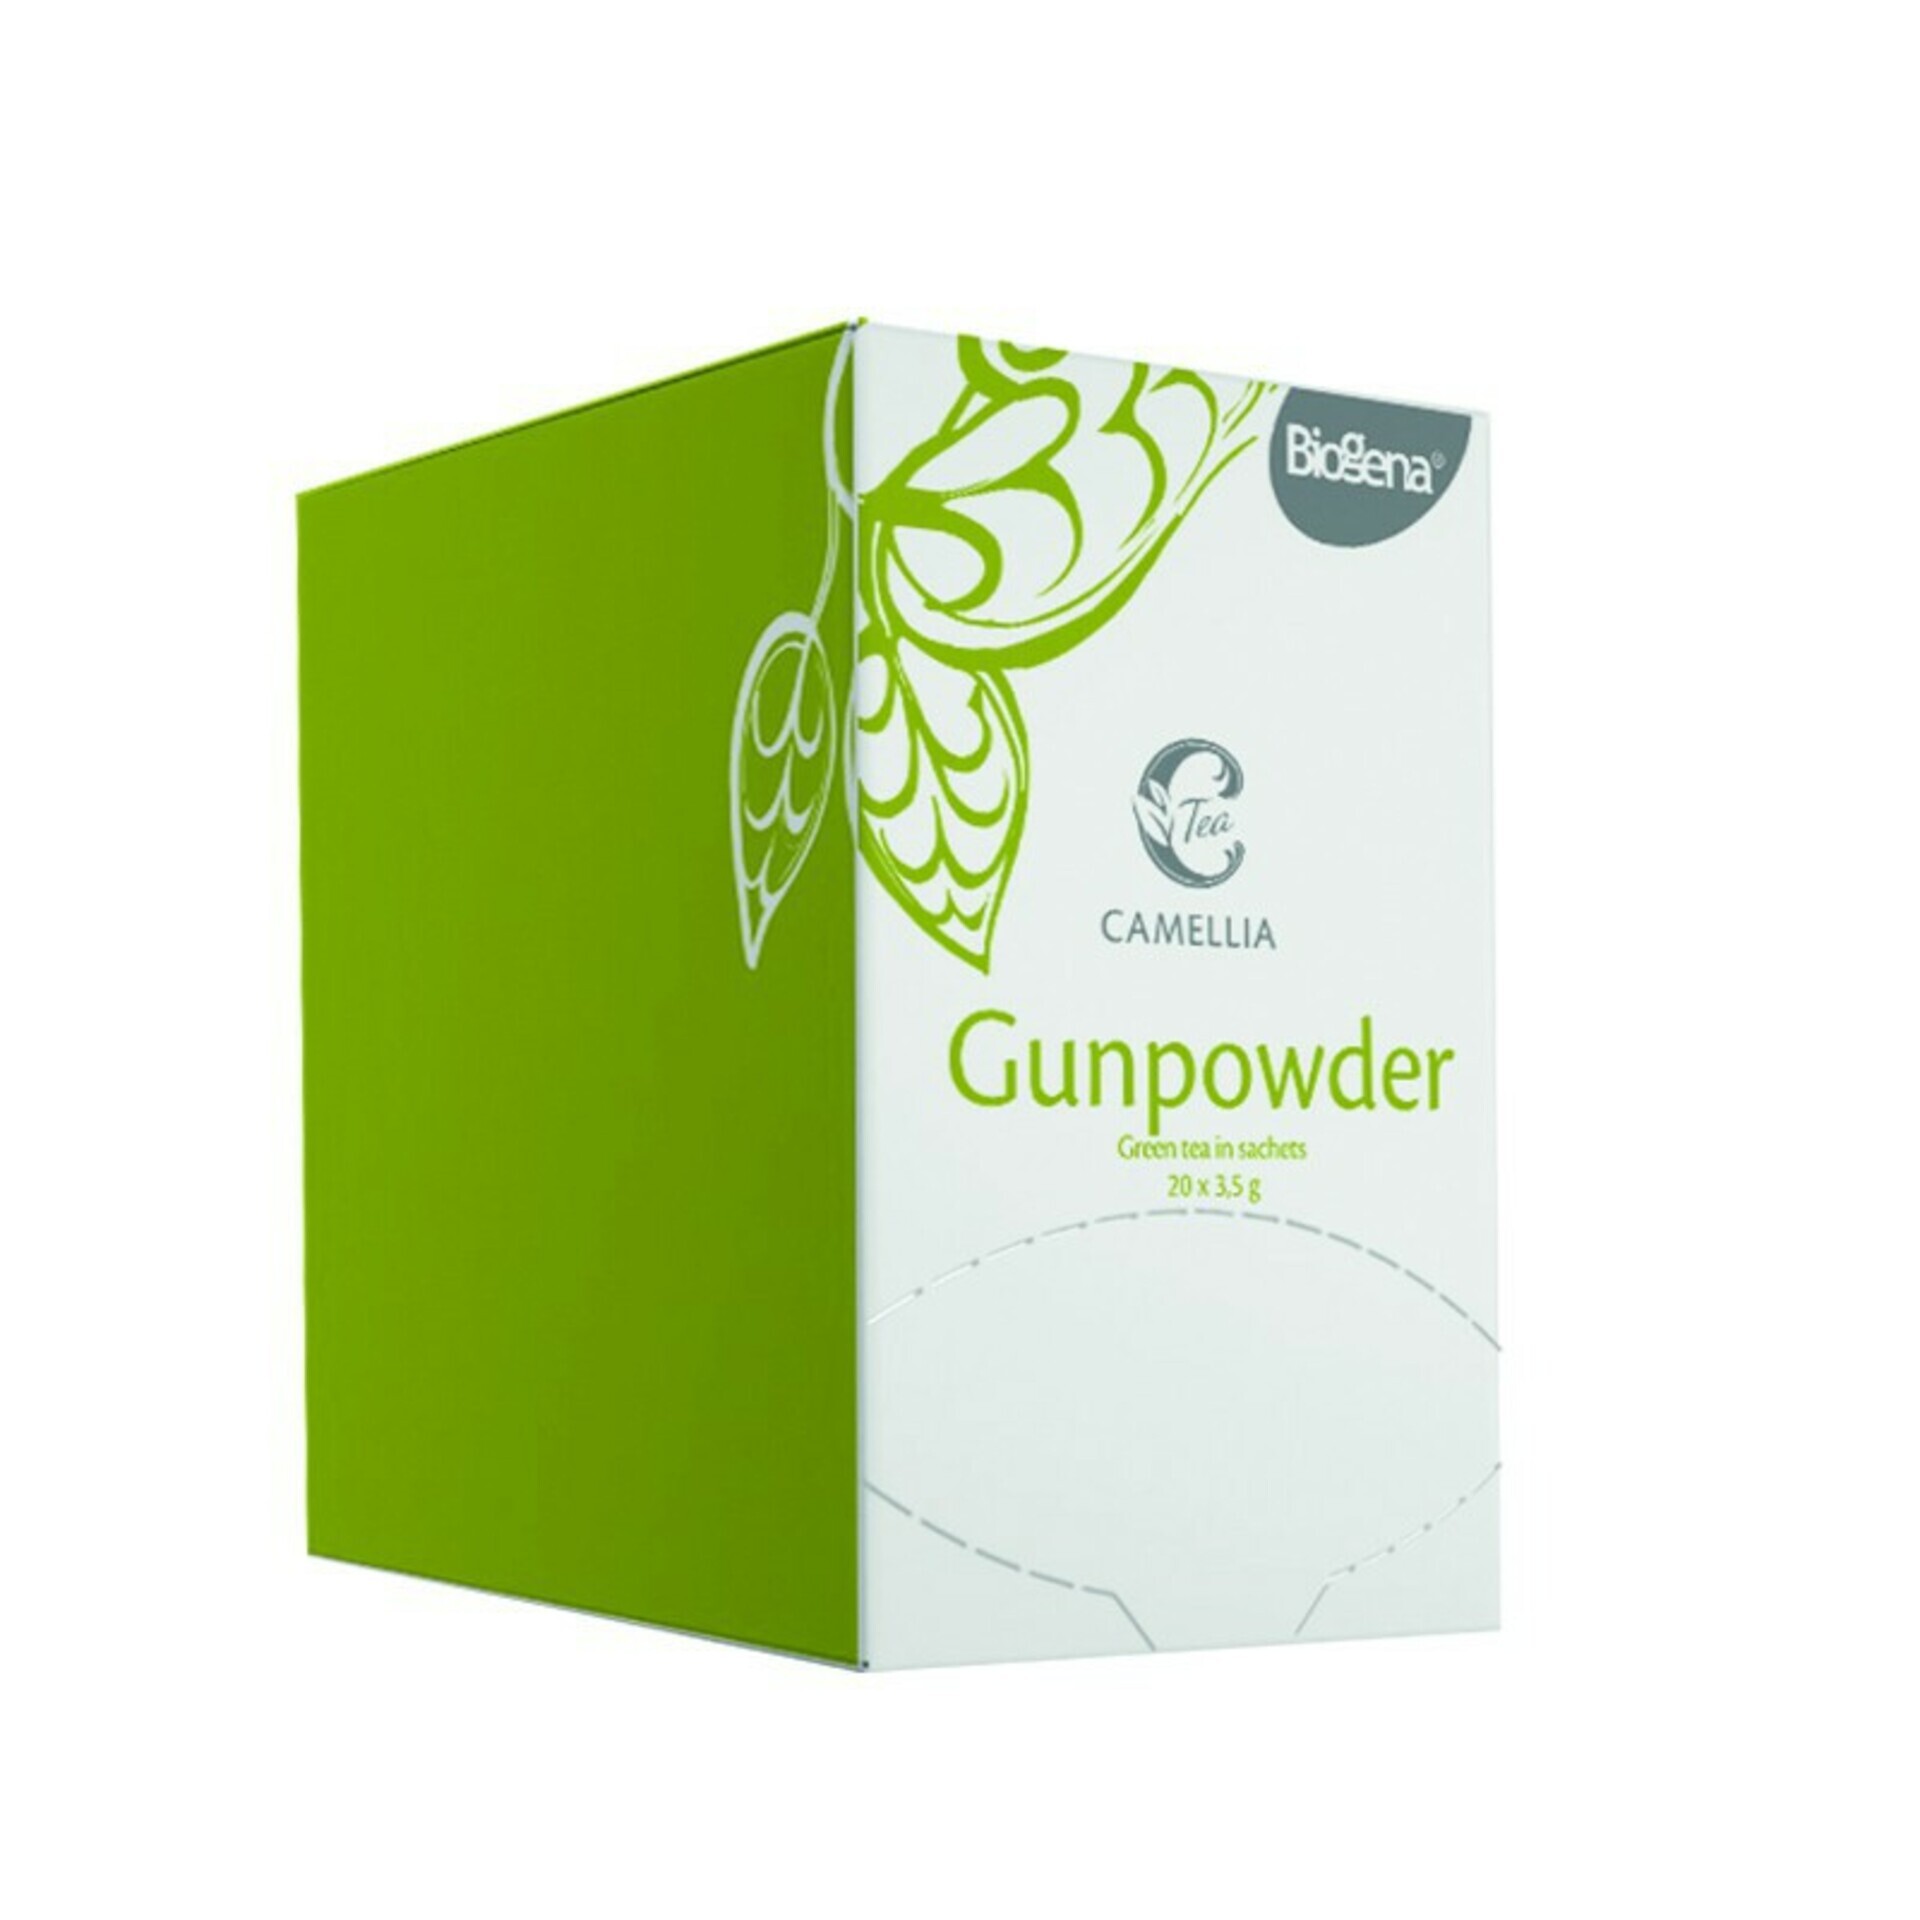 Biogena Camellia Gunpowder 20x3